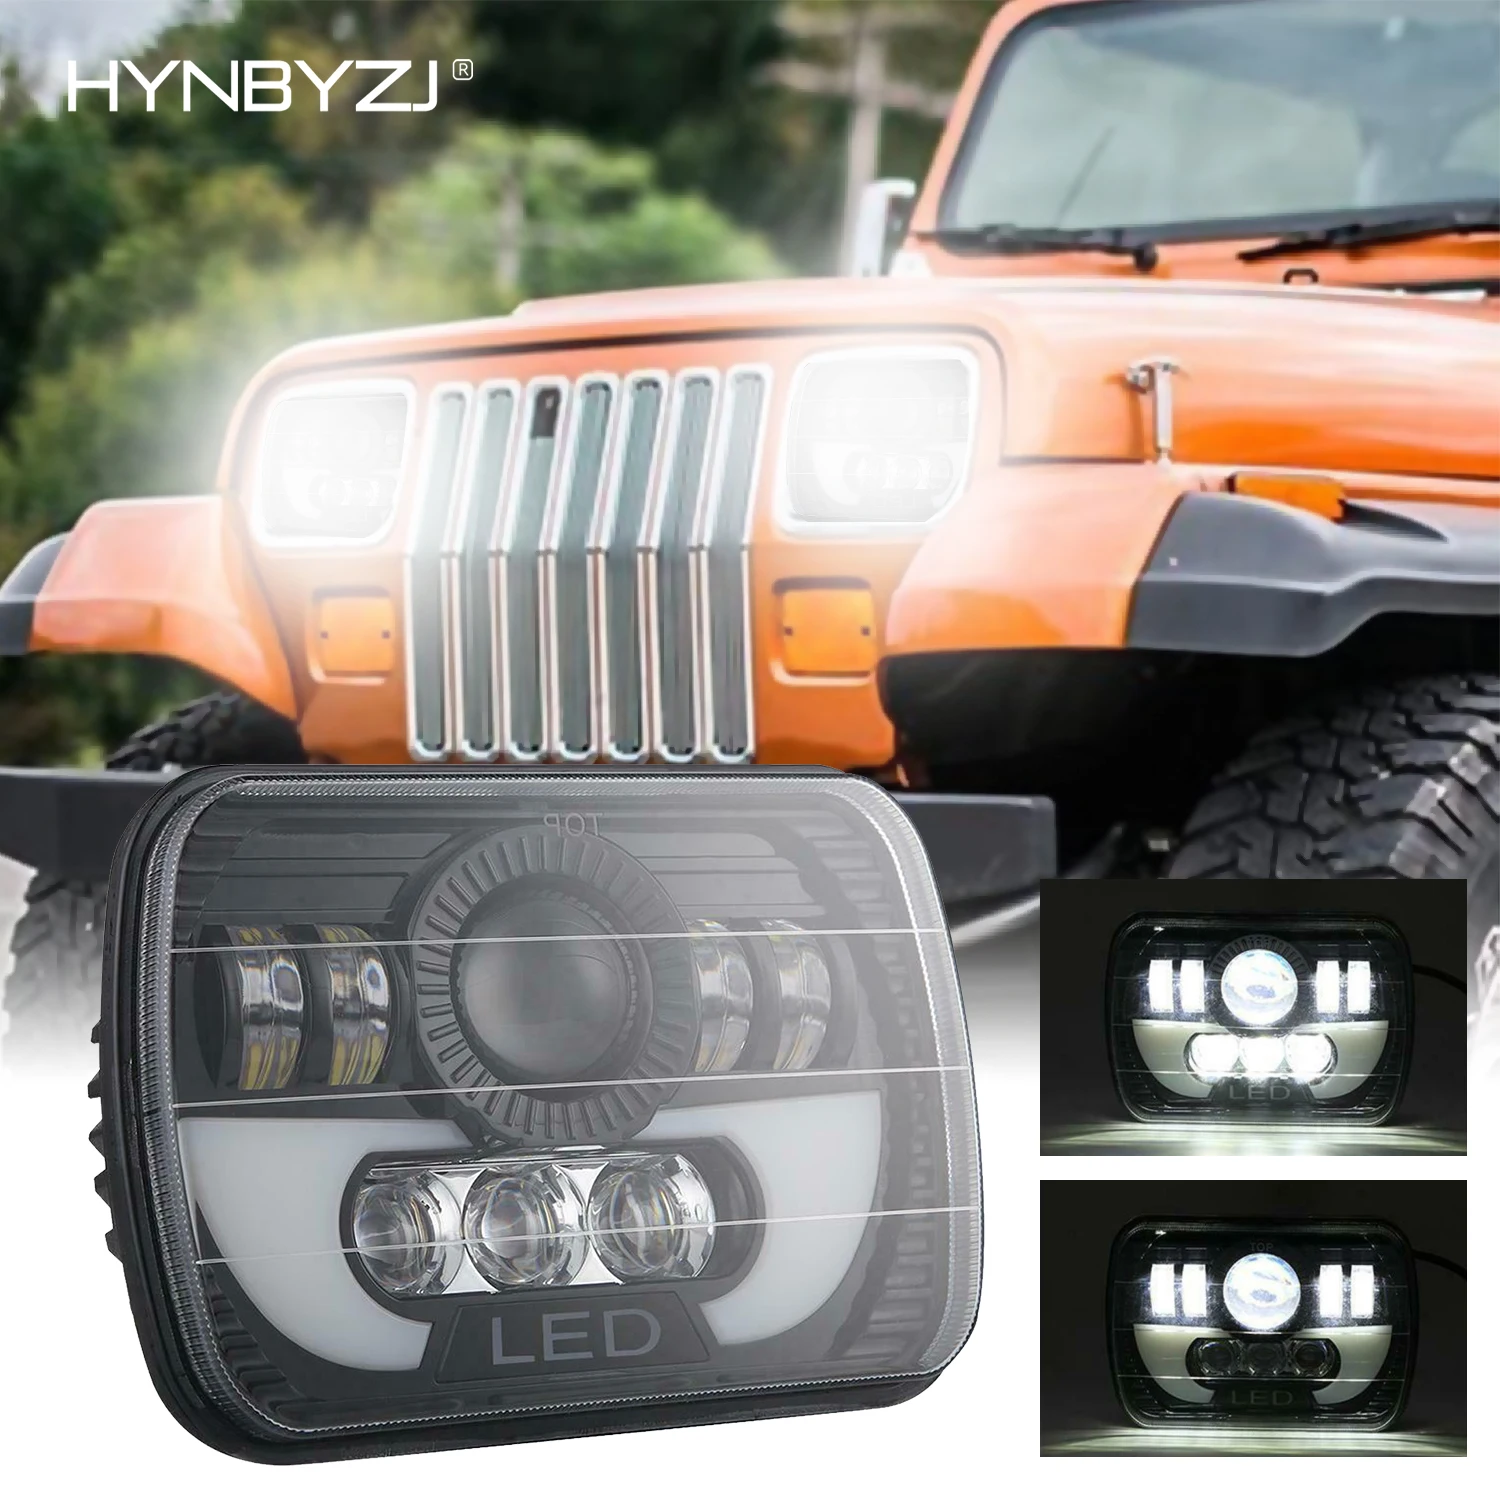 

HYNBYZJ 7X6 5X7 Inch 300W LED Headlight Hi/Lo Beam Halo DRL With H4 Wiring HarnessFor 87-95 Jeep Wrangler YJ 84-01 Cherokee XJ